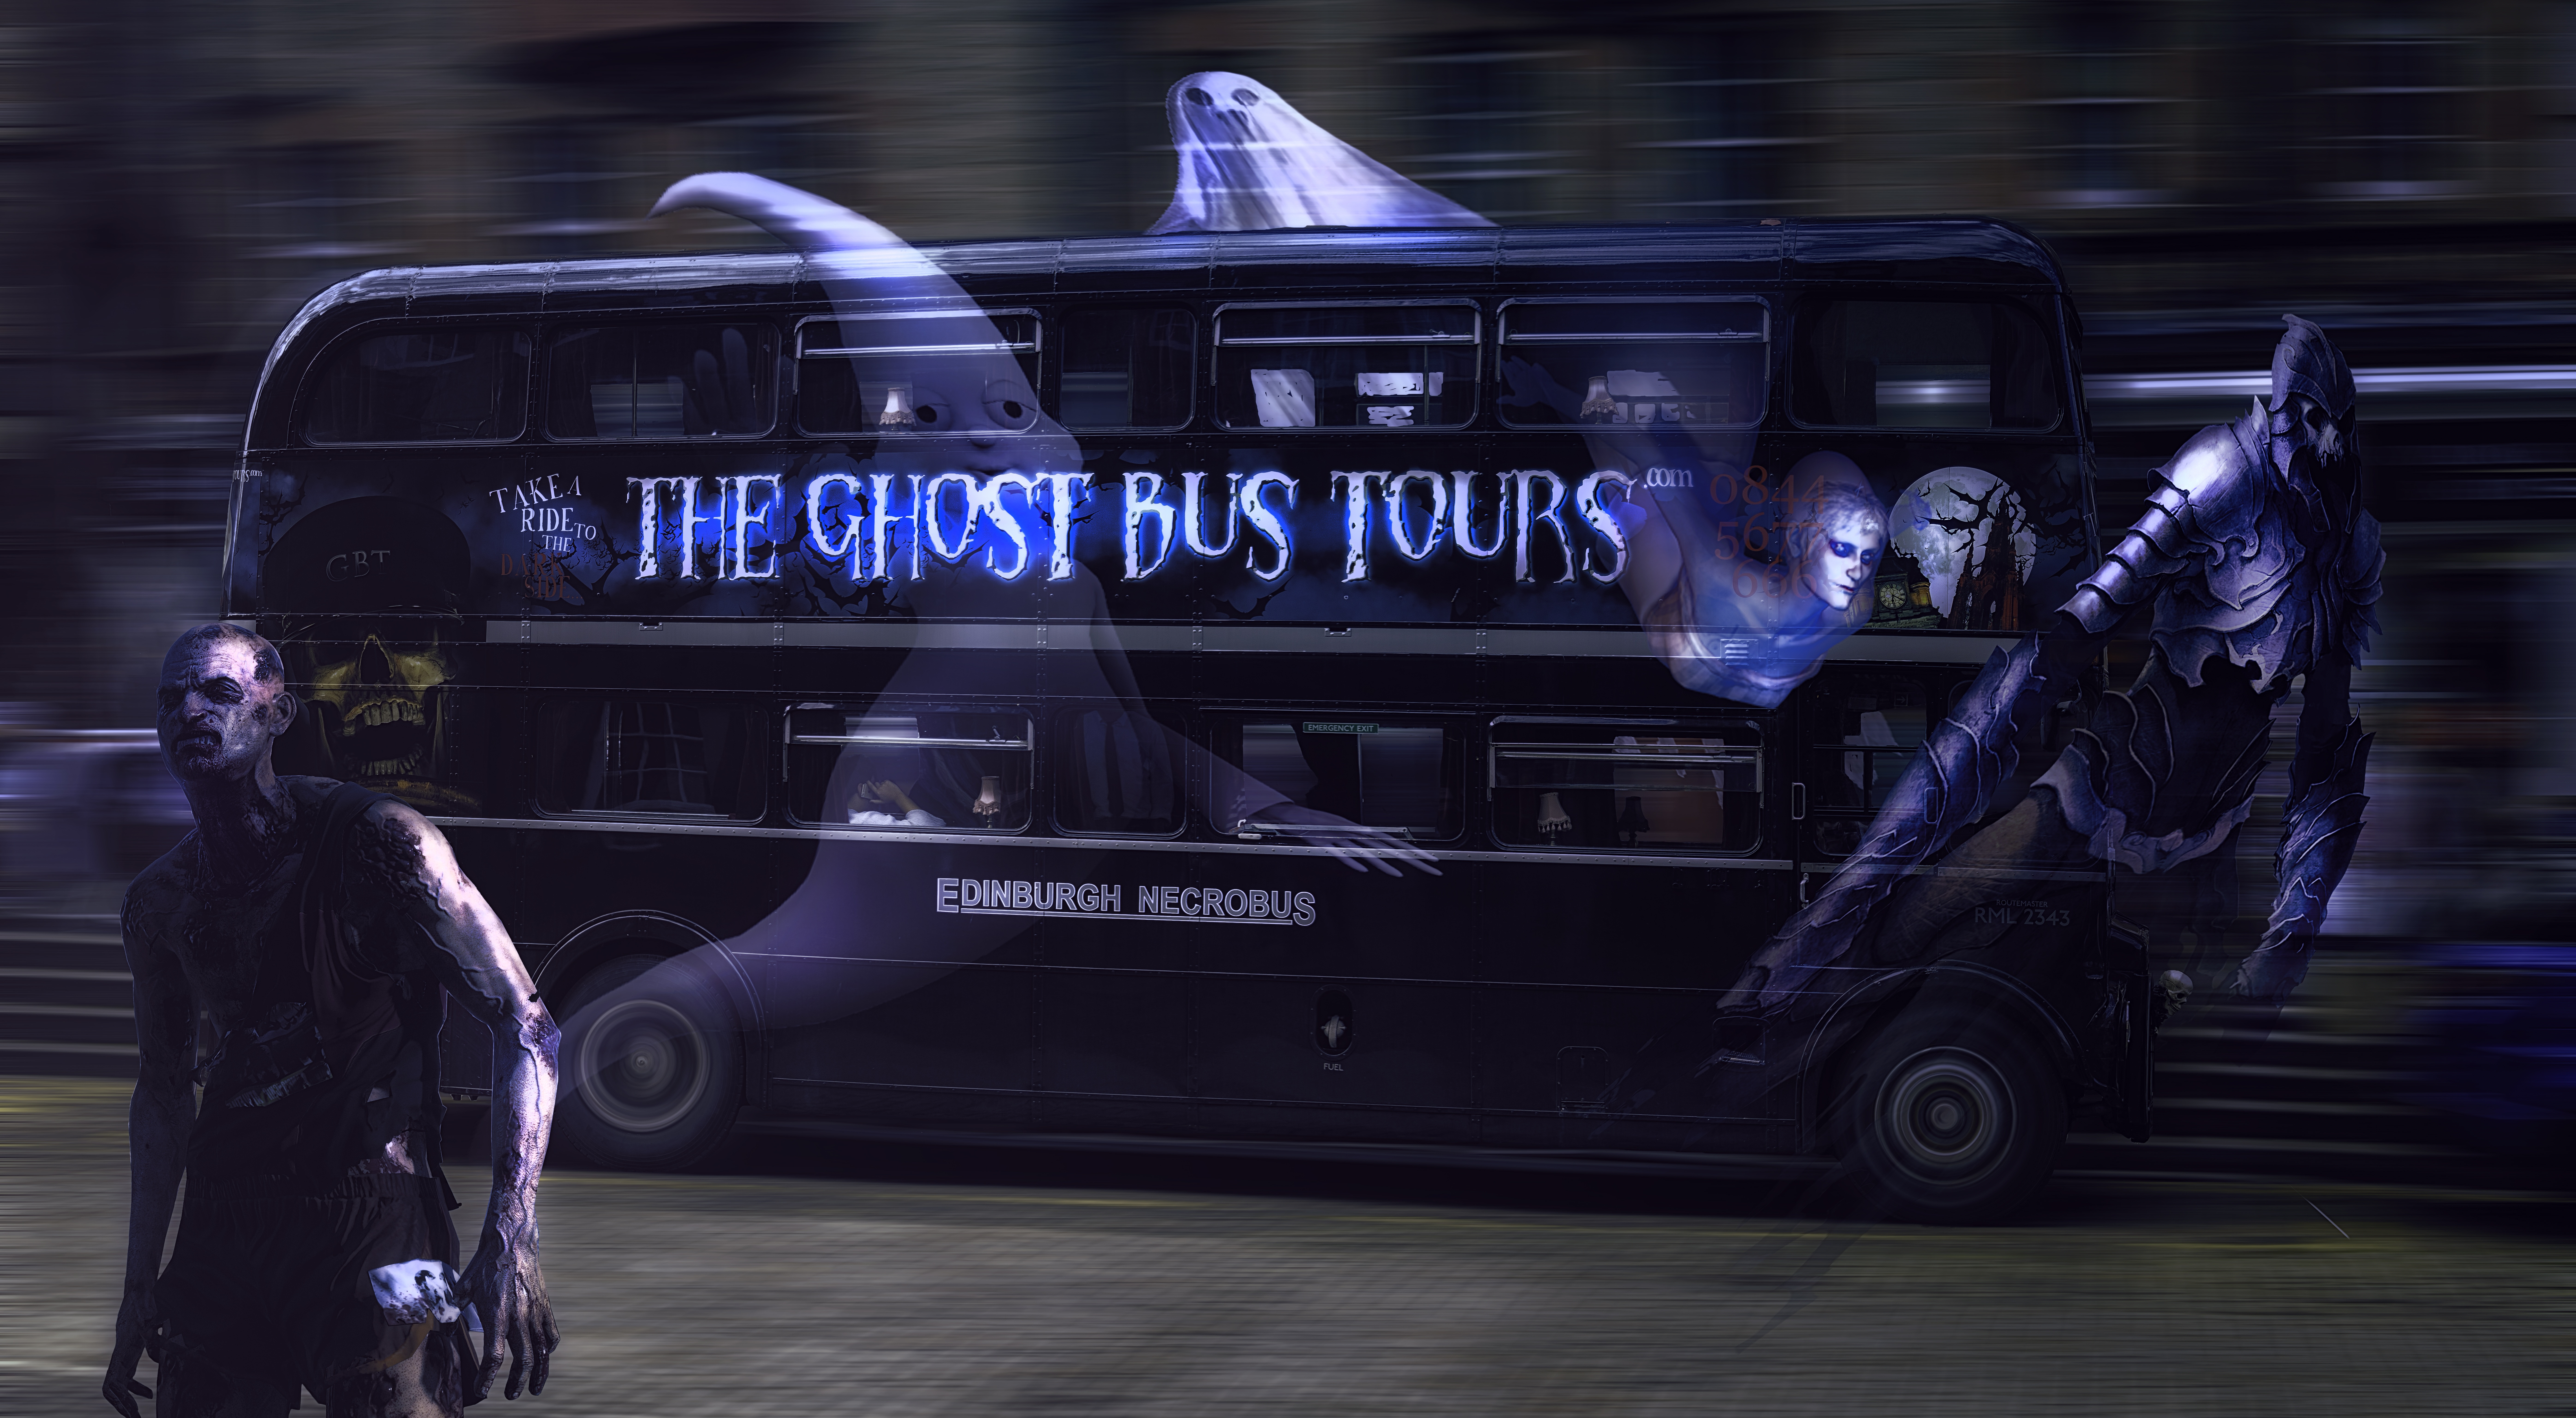 The Ghost Bus in Edinburgh Scotland by Weeegieschemie